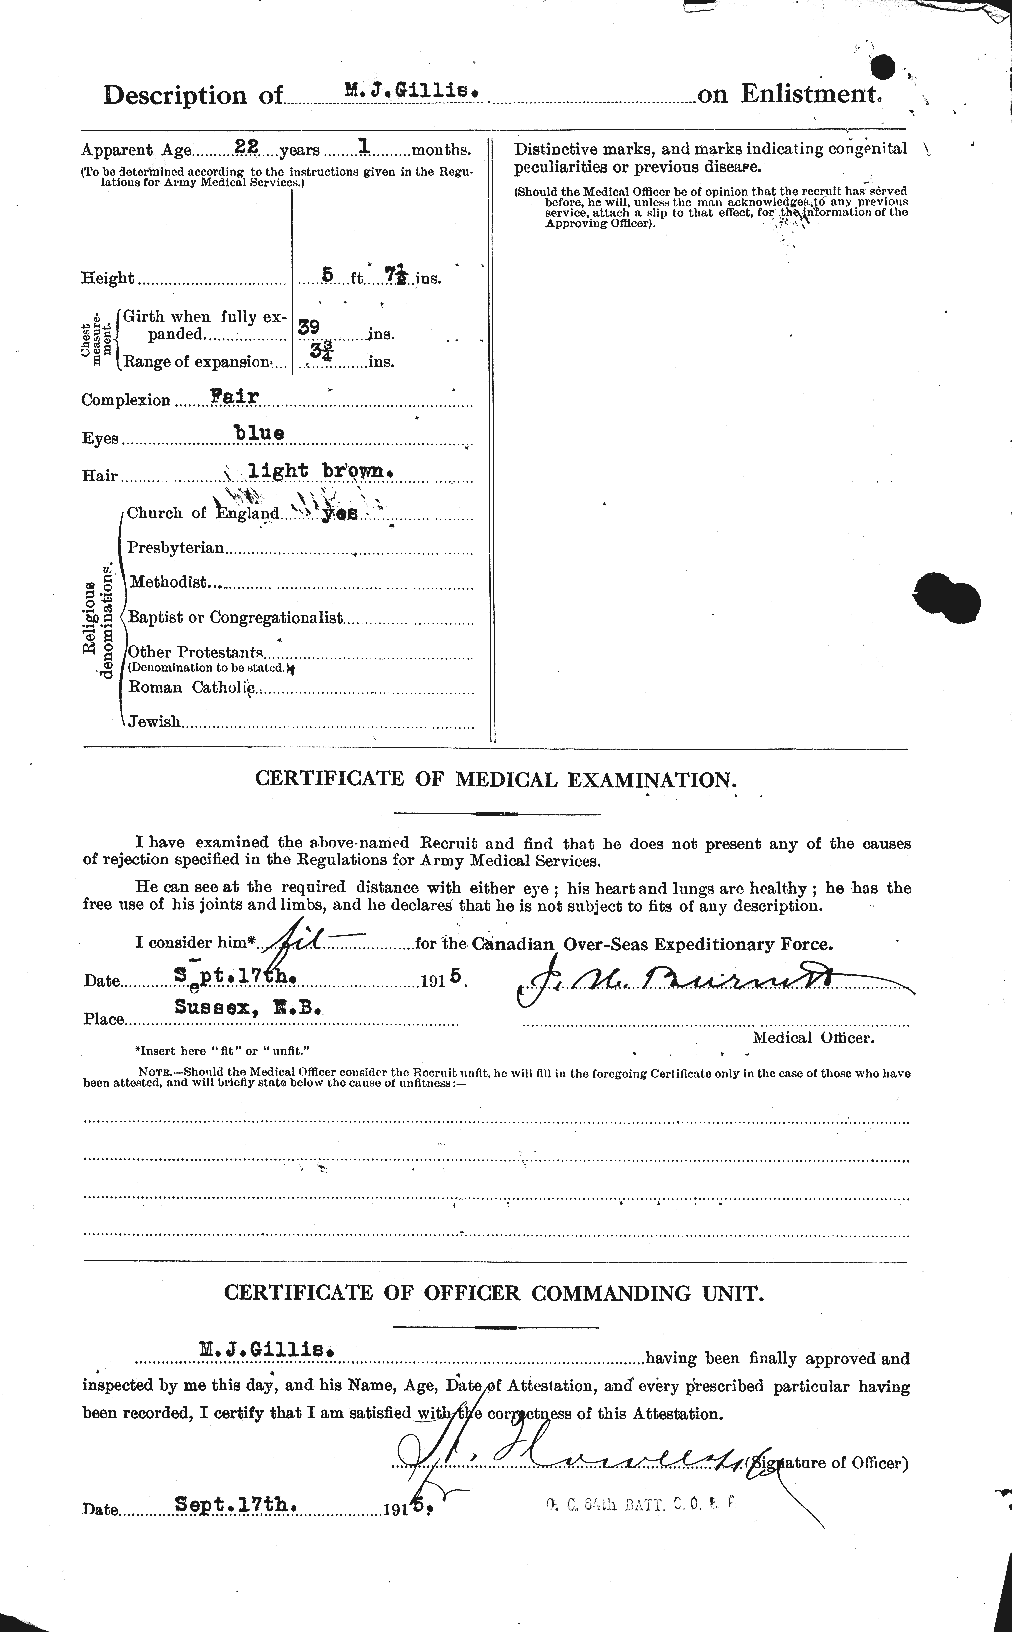 Dossiers du Personnel de la Première Guerre mondiale - CEC 348114b